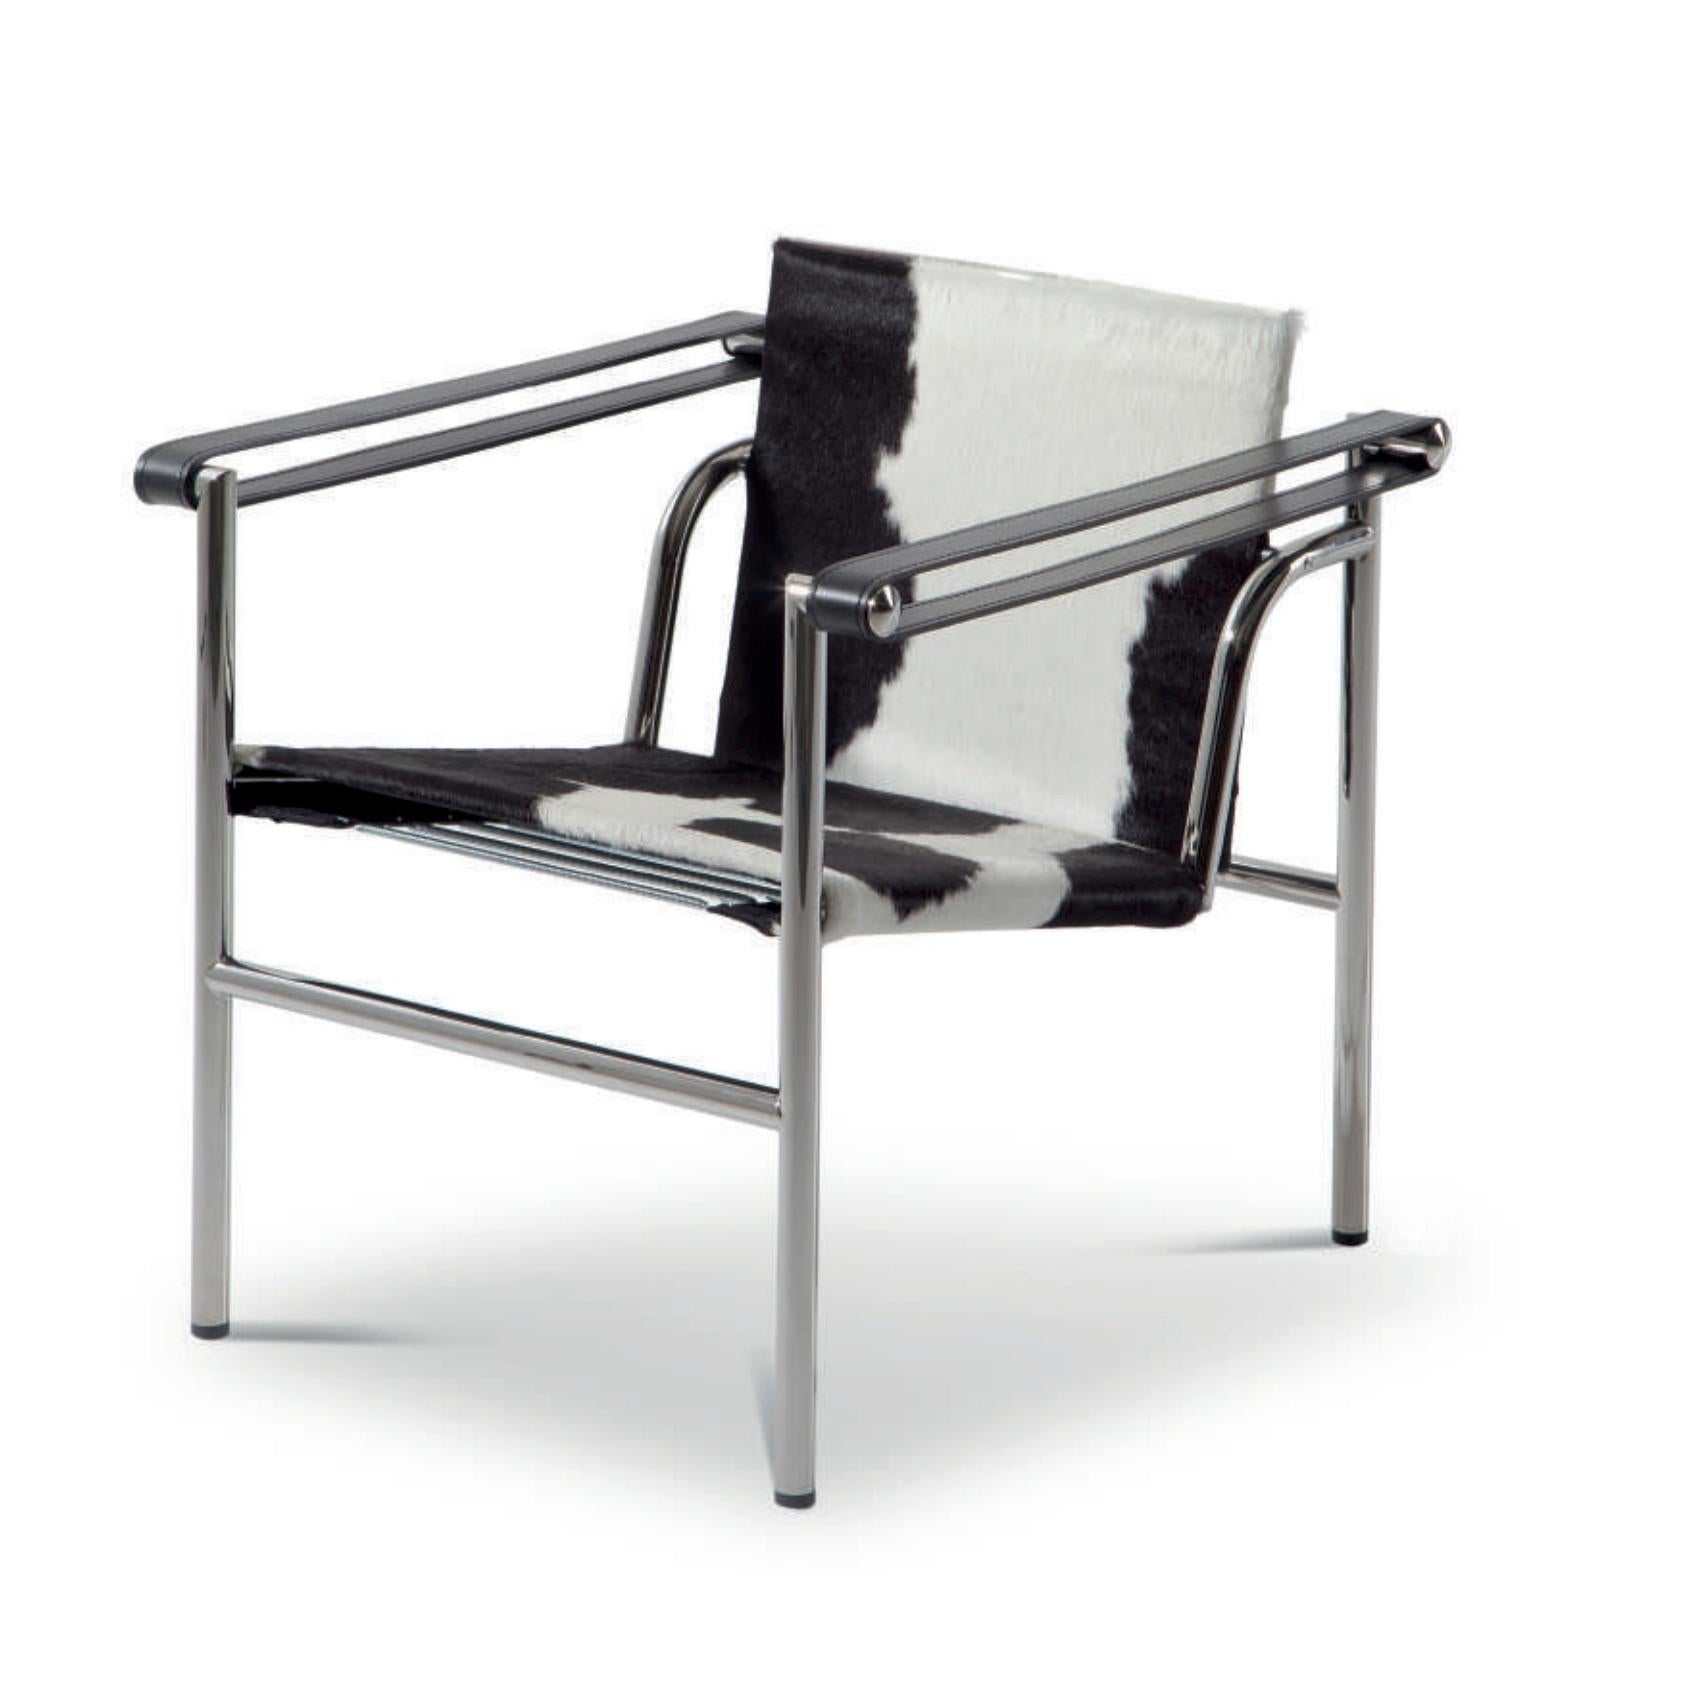 Stuhl, entworfen von Le Corbusier, Pierre Jeanneret und Charlotte Perriand im Jahr 1928. Neu aufgelegt im Jahr 1965.
Hergestellt von Cassina in Italien.

Ein leichter, kompakter Stuhl, der zusammen mit anderen wichtigen Modellen wie den Sesseln